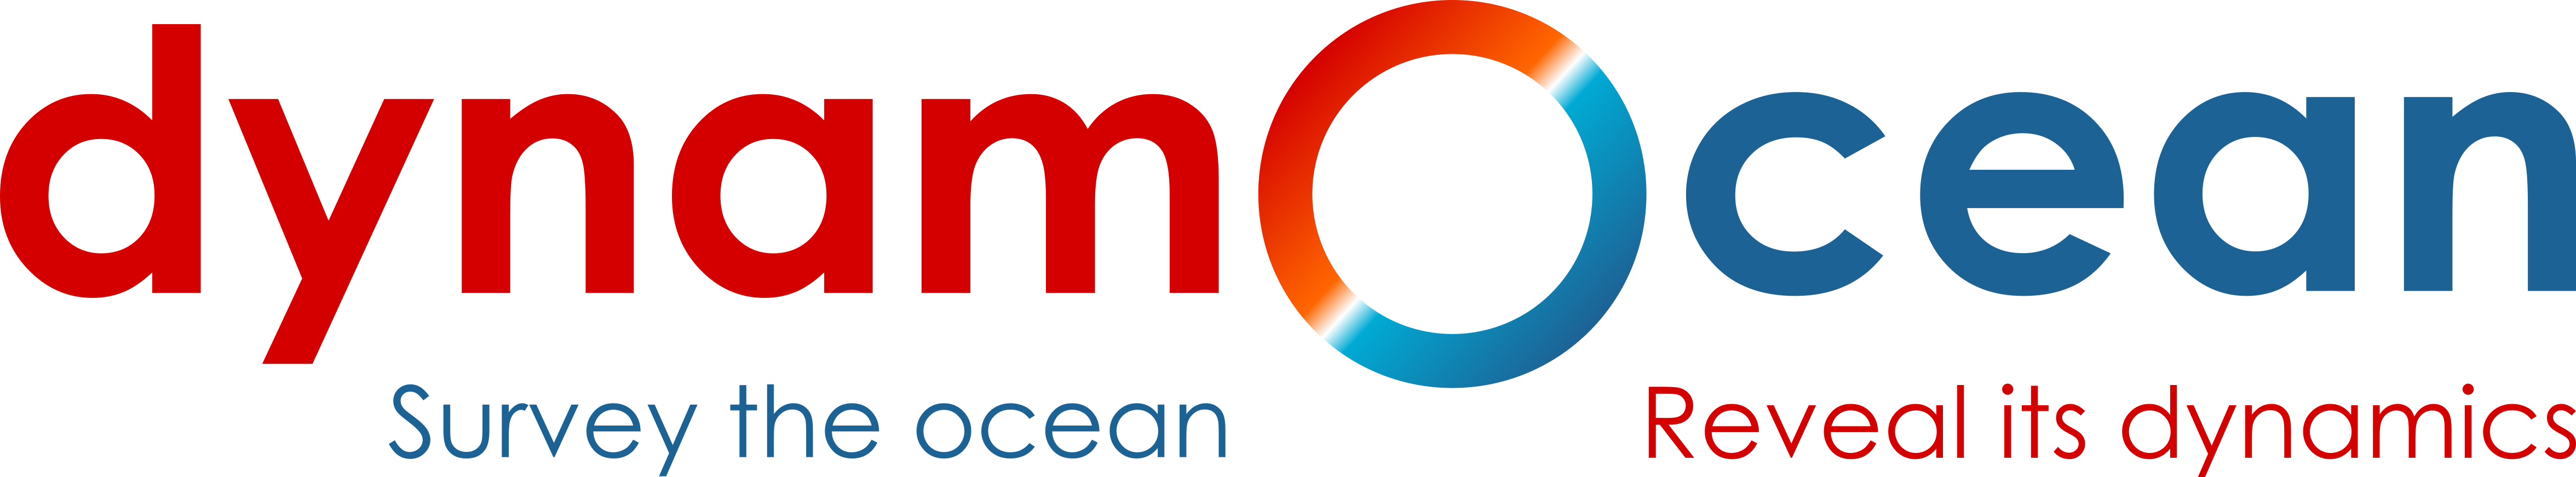 logo dynamocean